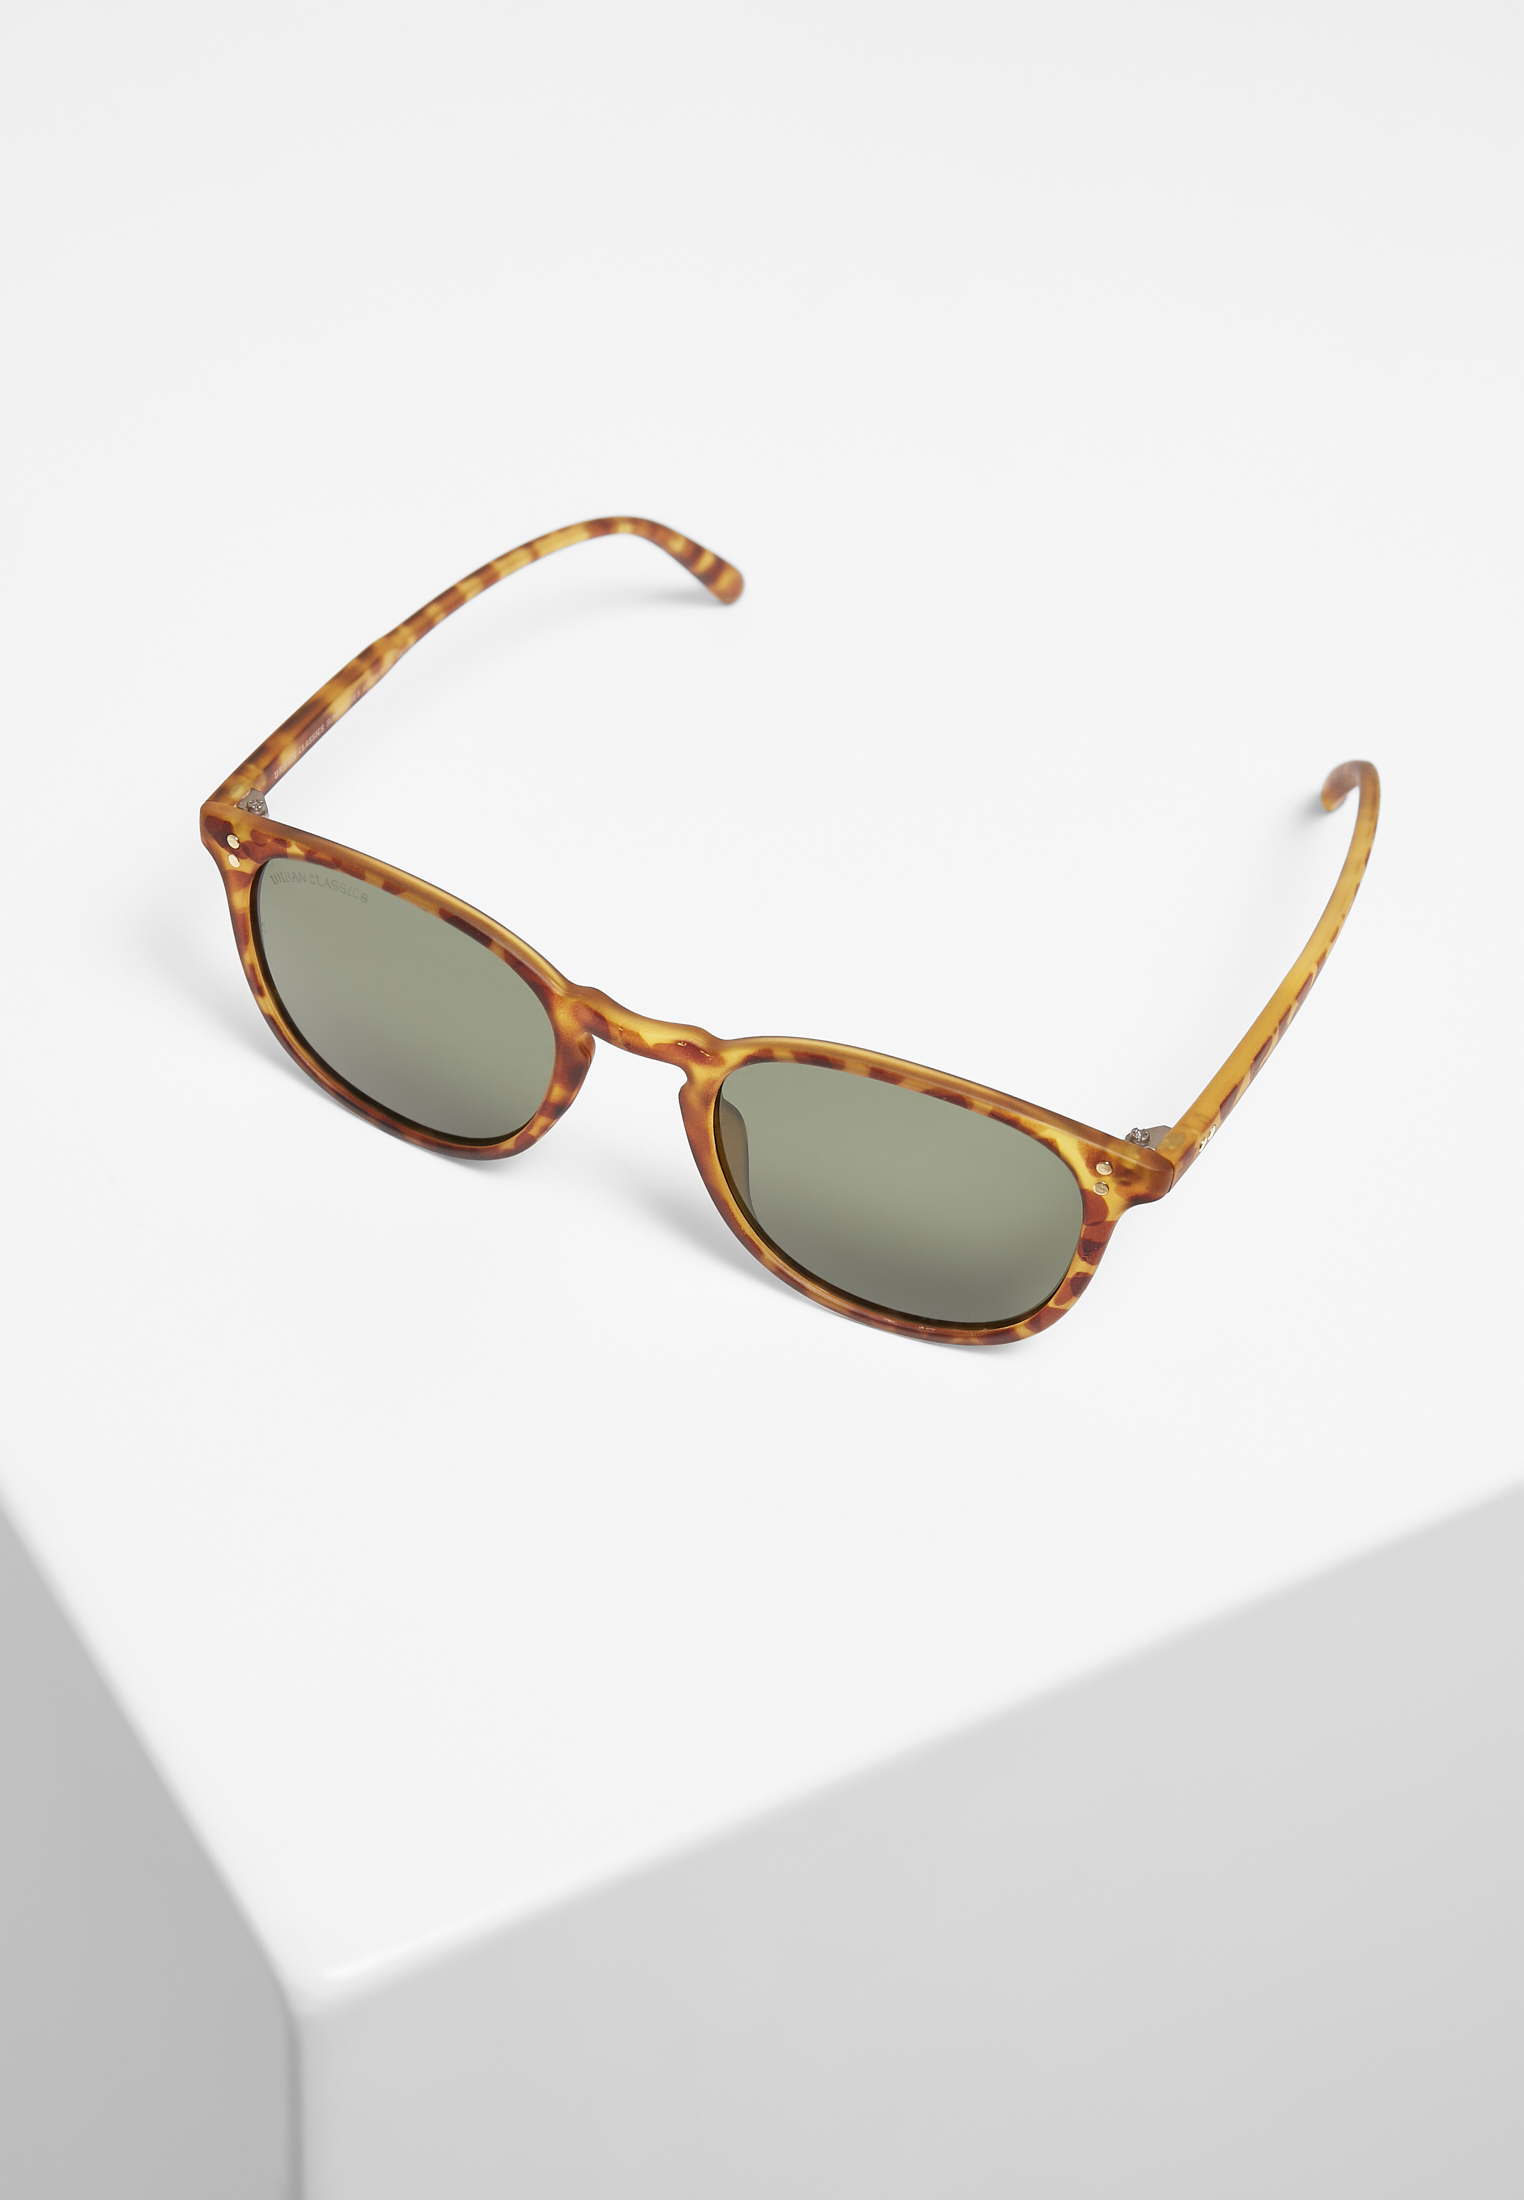 Sonnenbrillen Sunglasses Arthur UC in Farbe brown leo/green